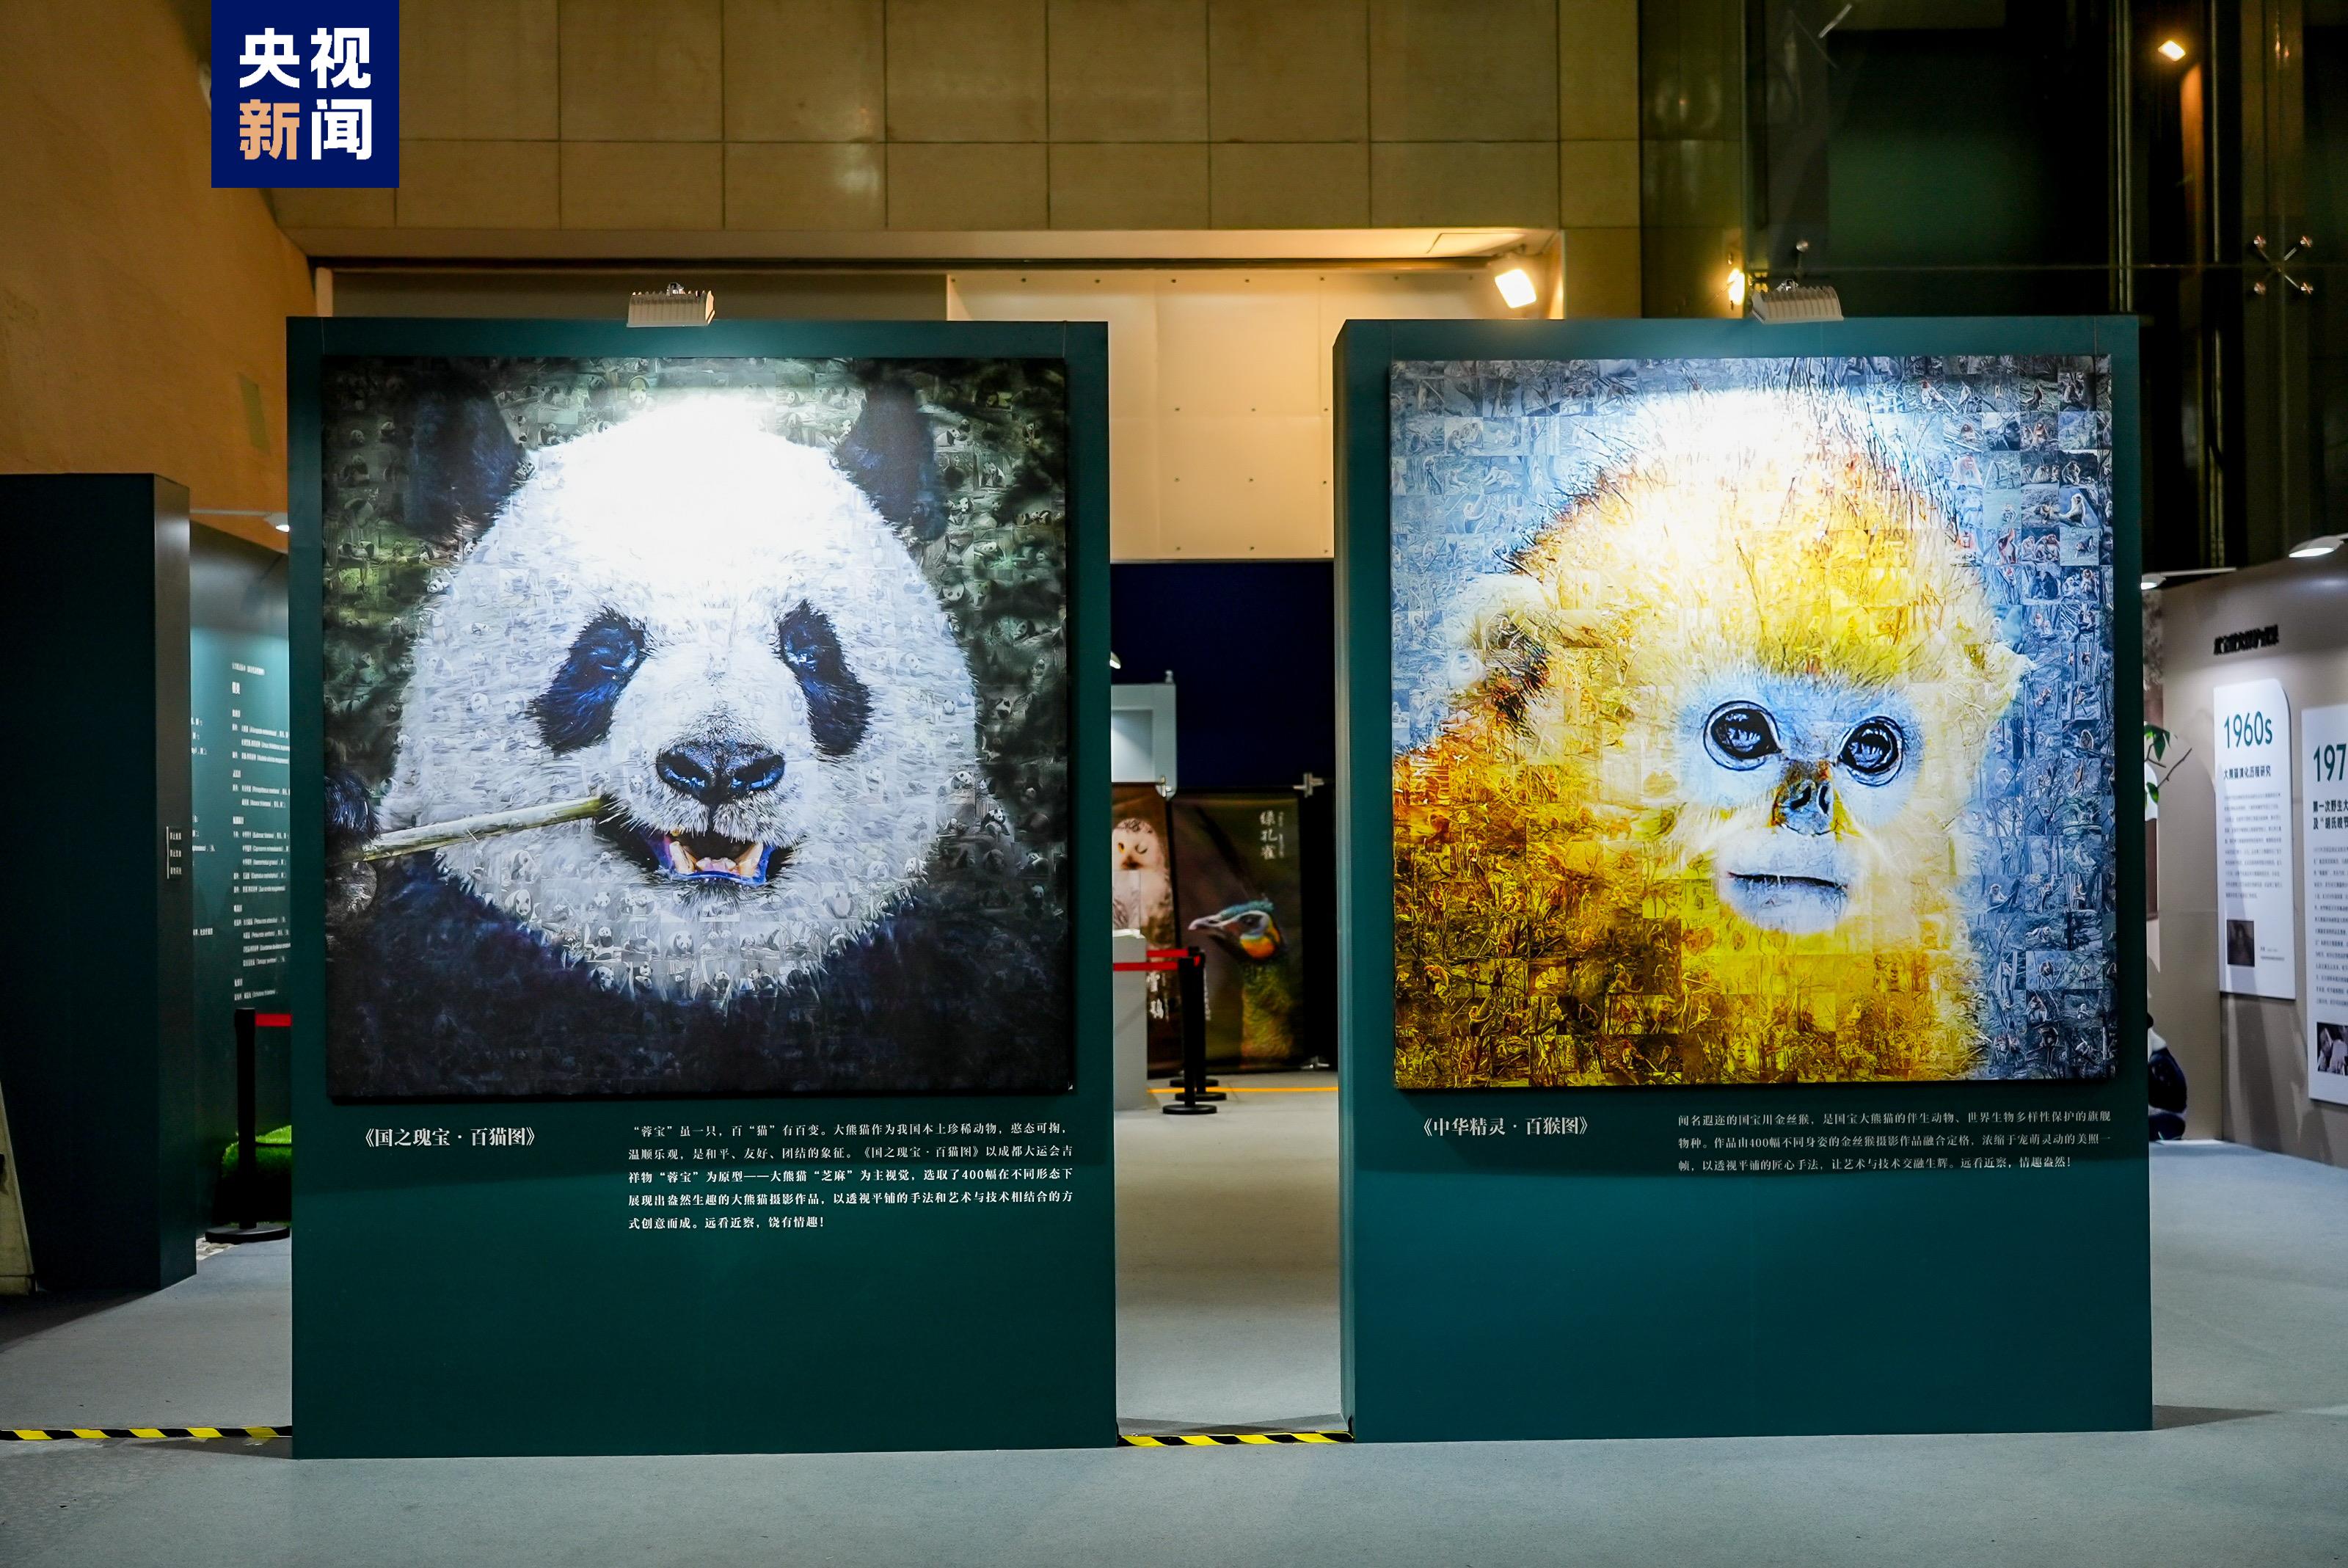 大熊猫我国公园自然(Nature)培育计划“双宝溯源行动”正式启动